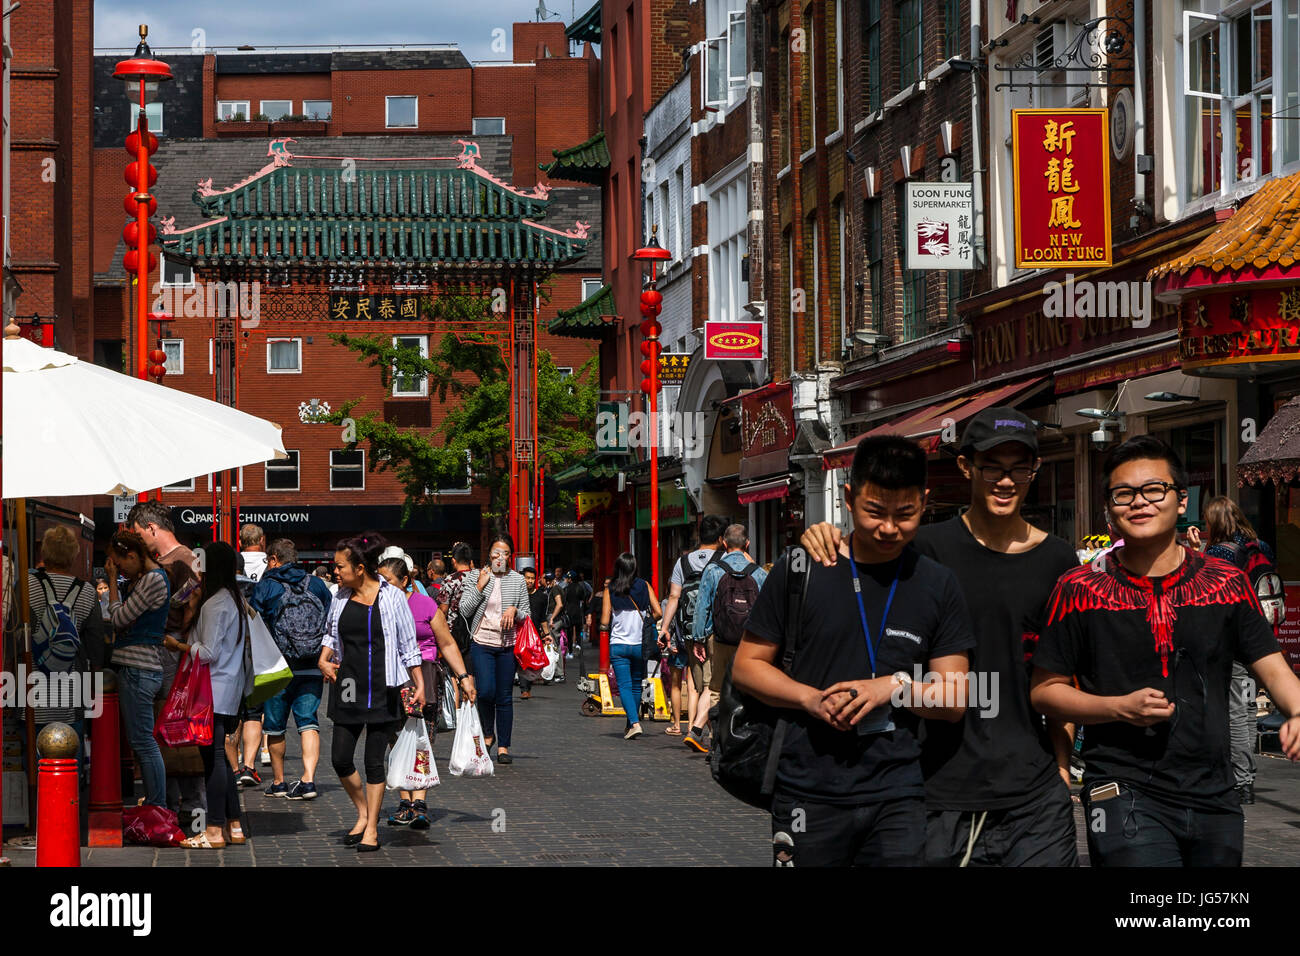 Les gens de Shopping dans Gerrard Street, Chinatown, Londres, UK Banque D'Images